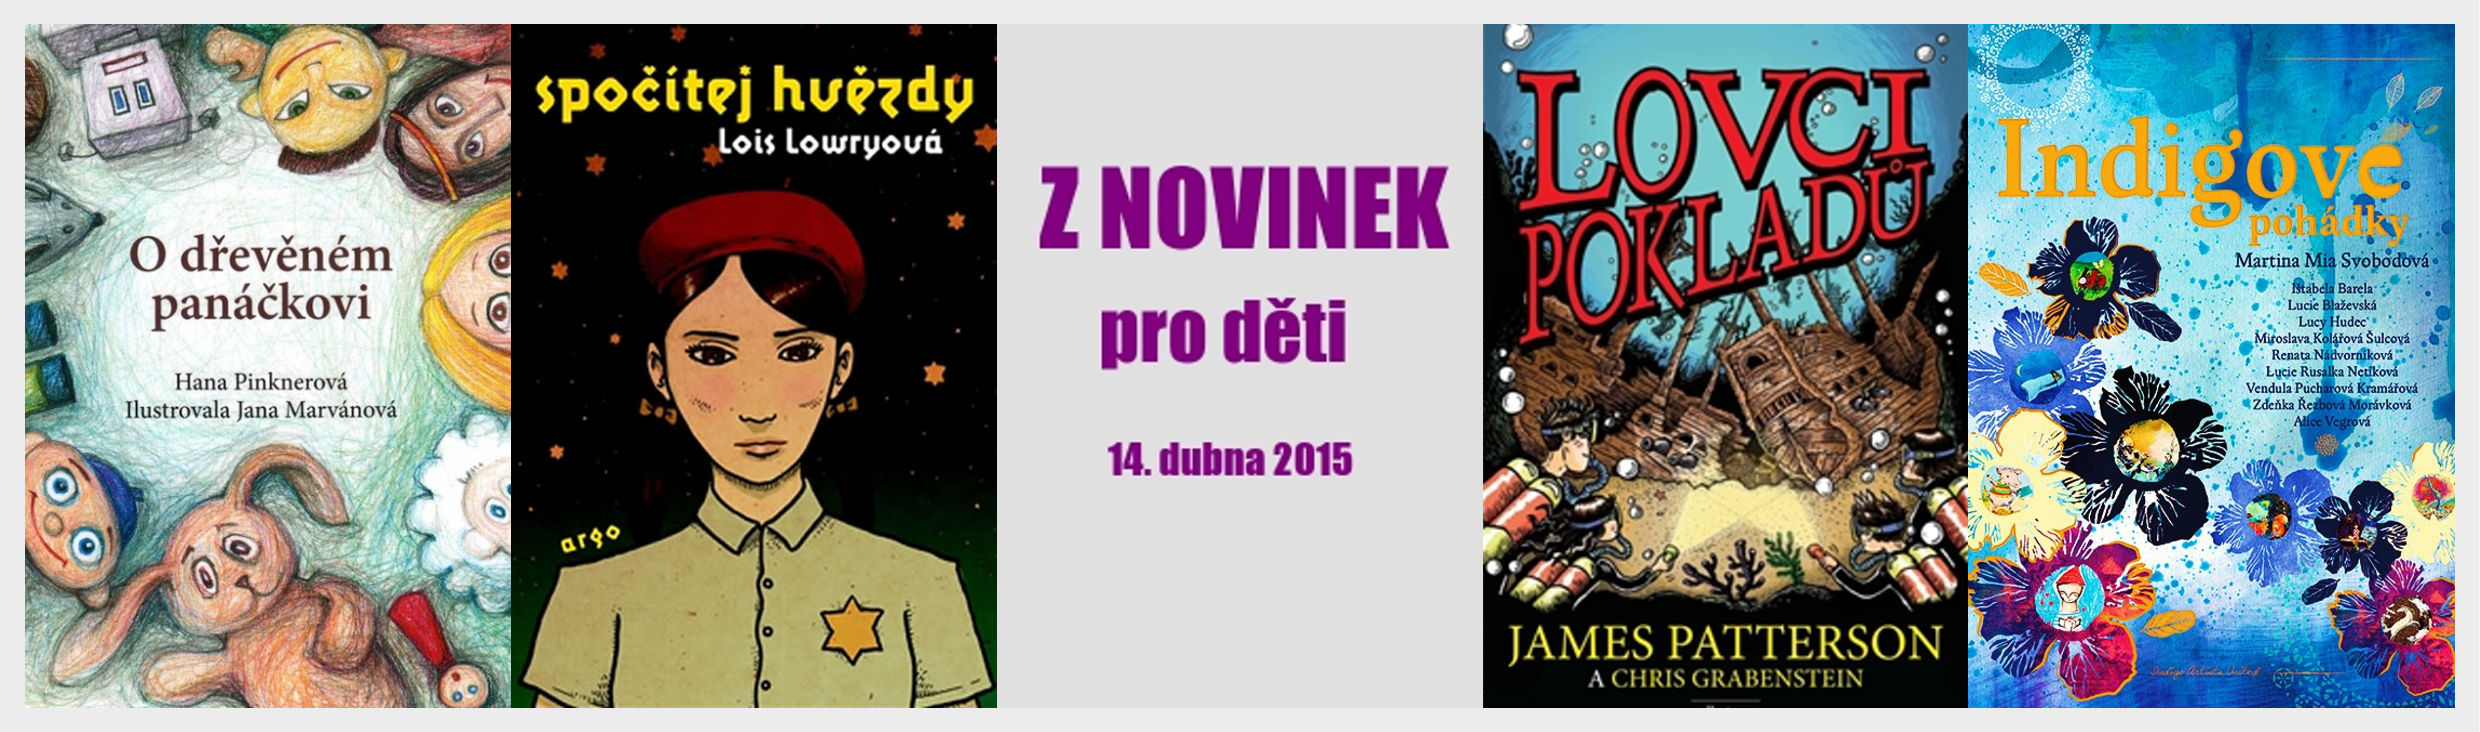 Obálky nových knih pro děti (14. dubna 2015)